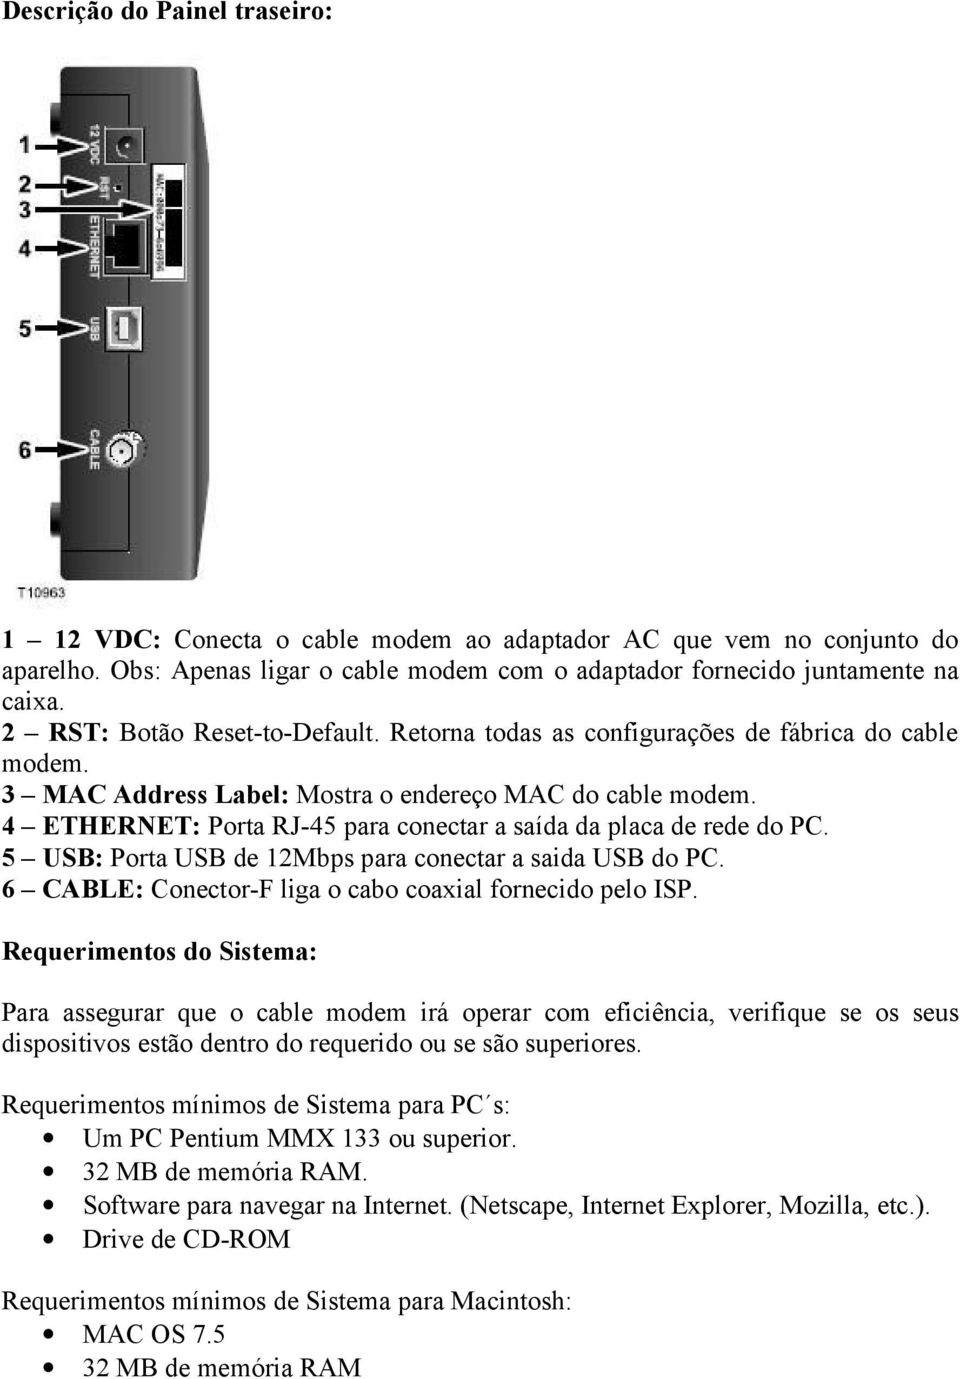 4 ETHERNET: Porta RJ-45 para conectar a saída da placa de rede do PC. 5 USB: Porta USB de 12Mbps para conectar a saida USB do PC. 6 CABLE: Conector-F liga o cabo coaxial fornecido pelo ISP.